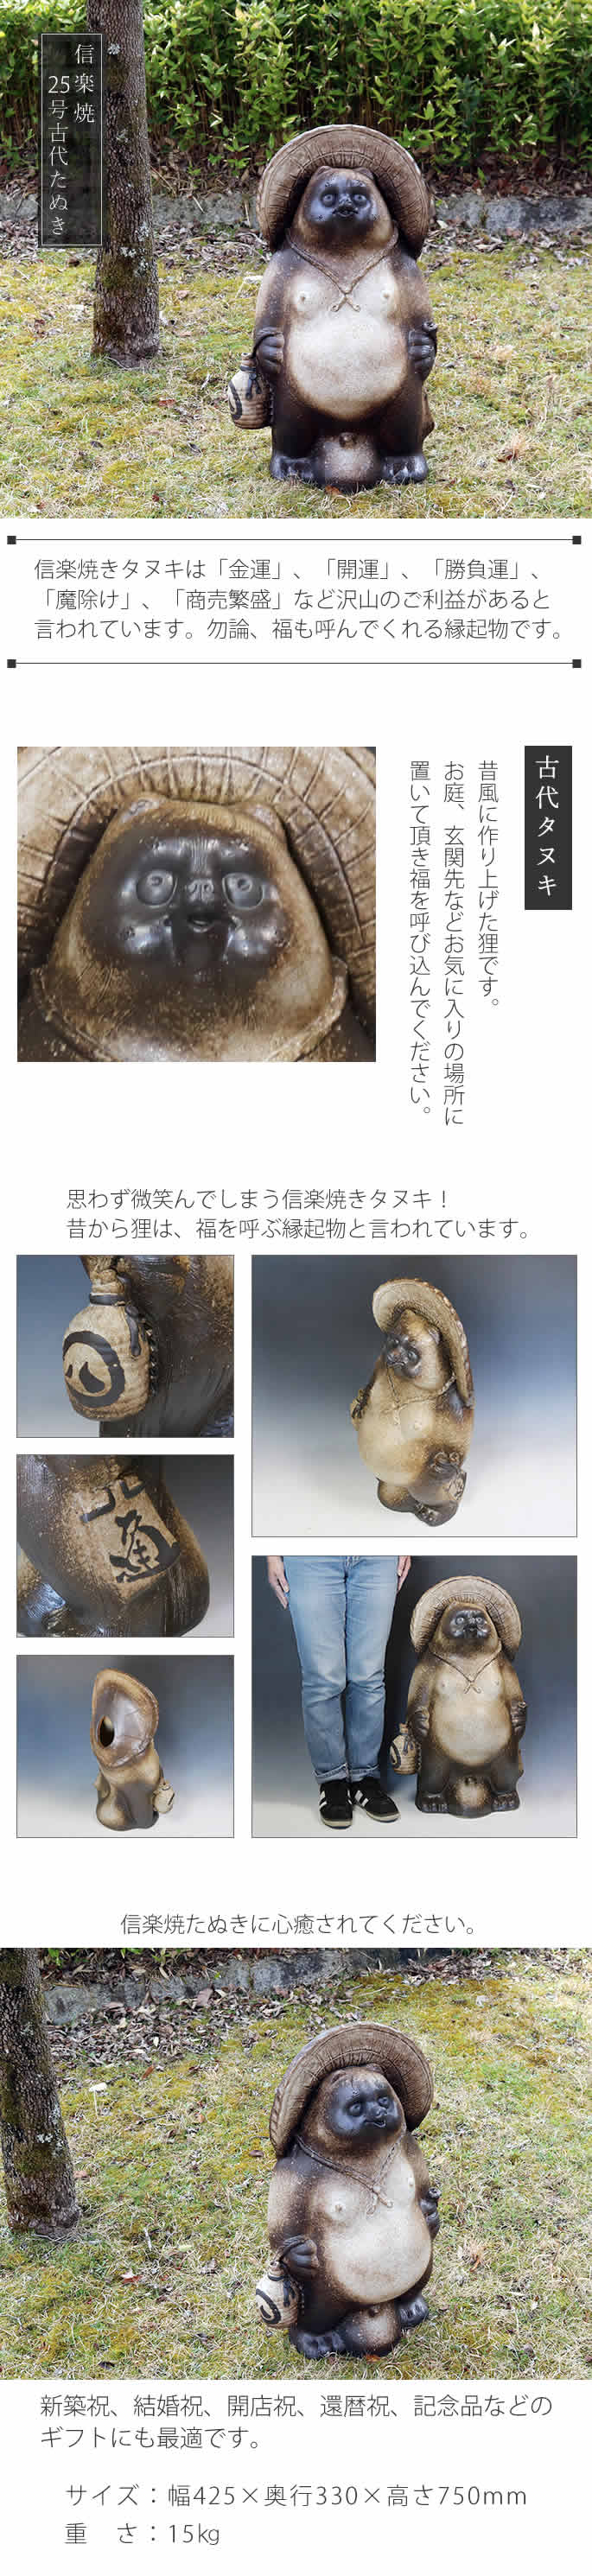 信楽焼 25号古代風狸 たぬき タヌキ 開運 縁起物 可愛い 陶器 商売繁盛